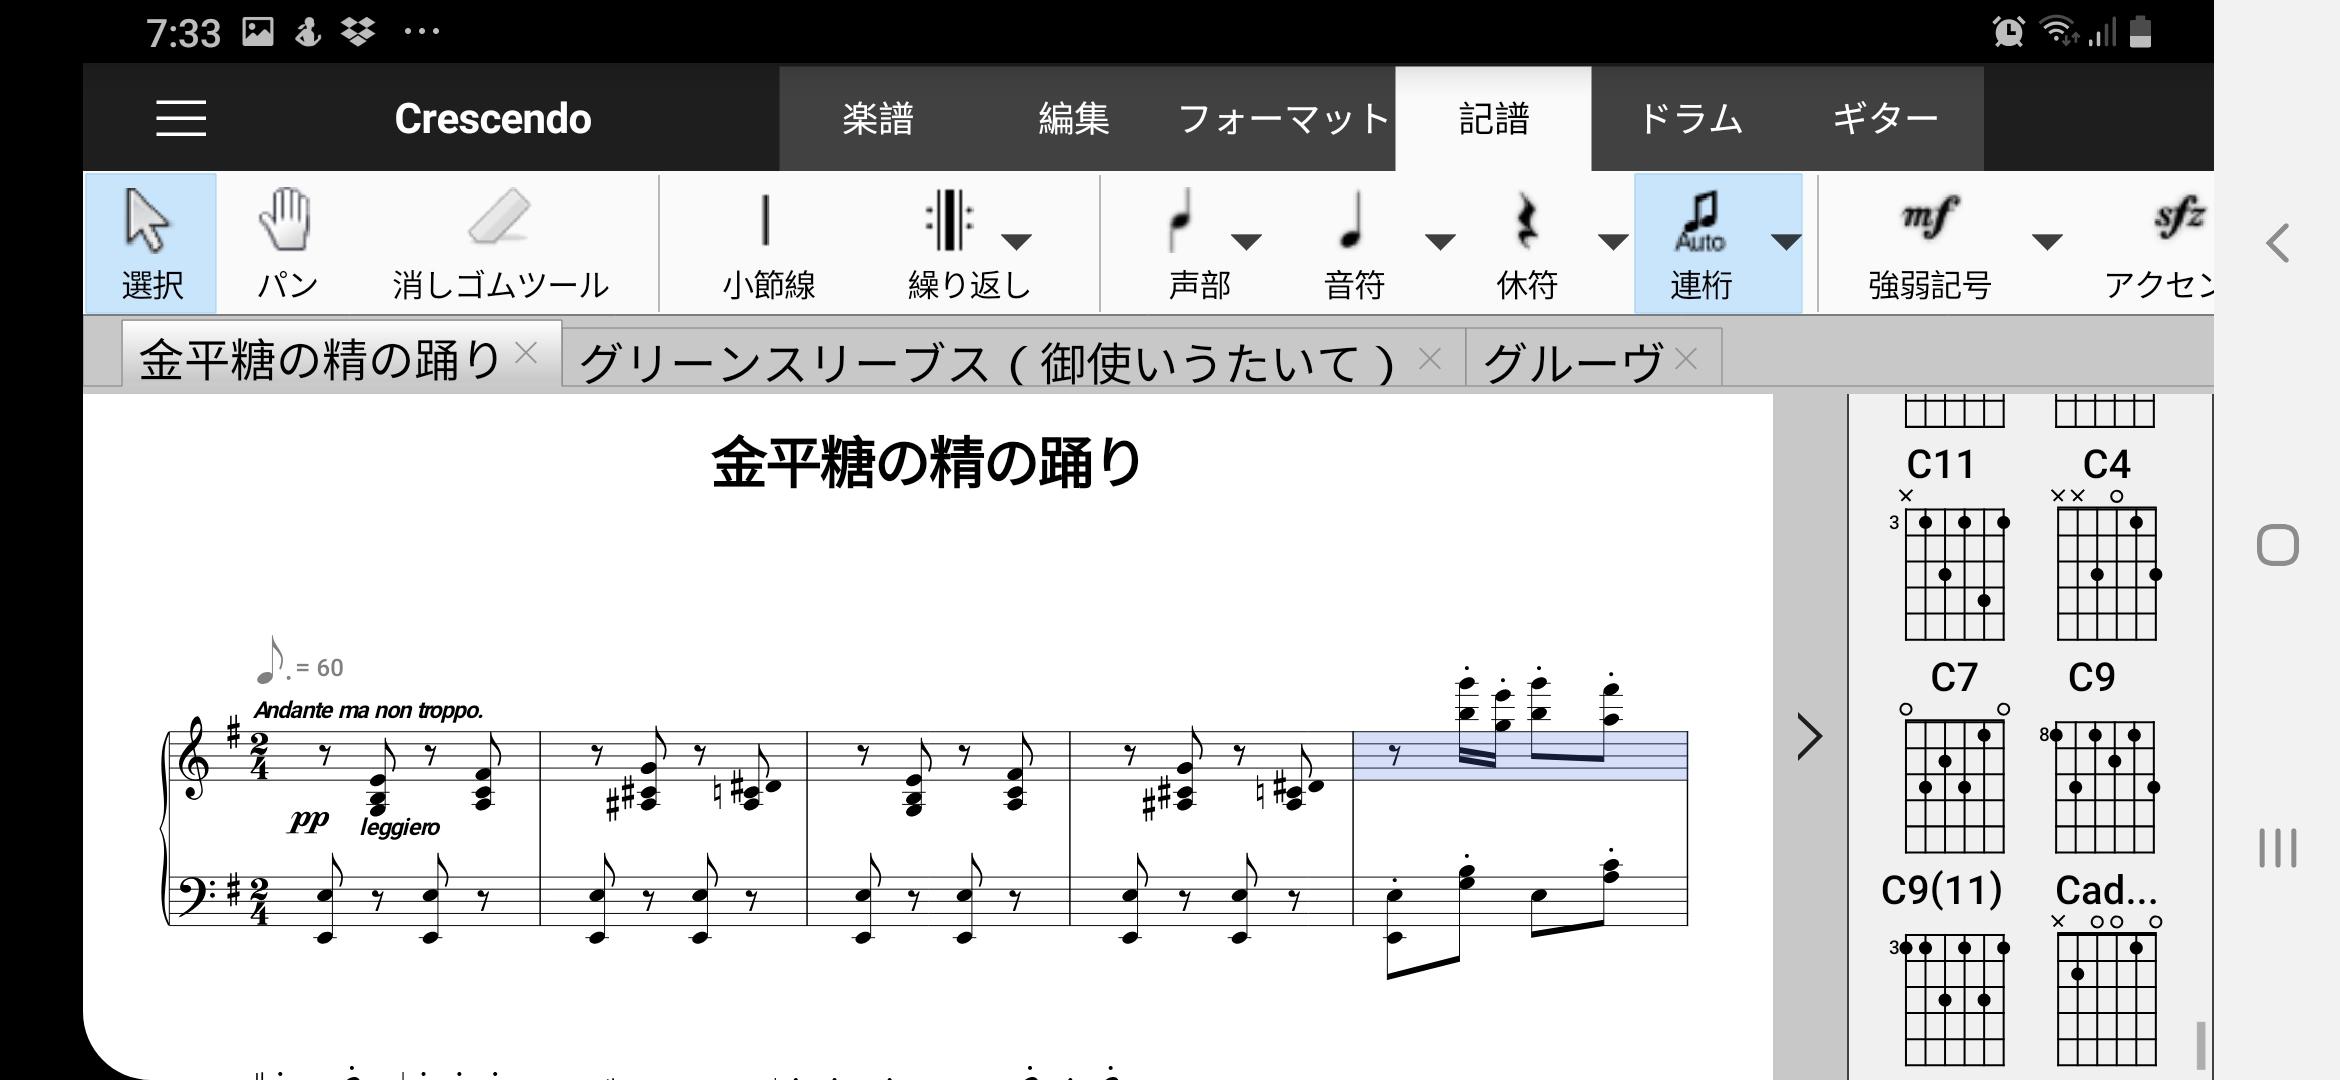 Crescendo楽譜作成アプリ無料版 6.63 Screenshot 1